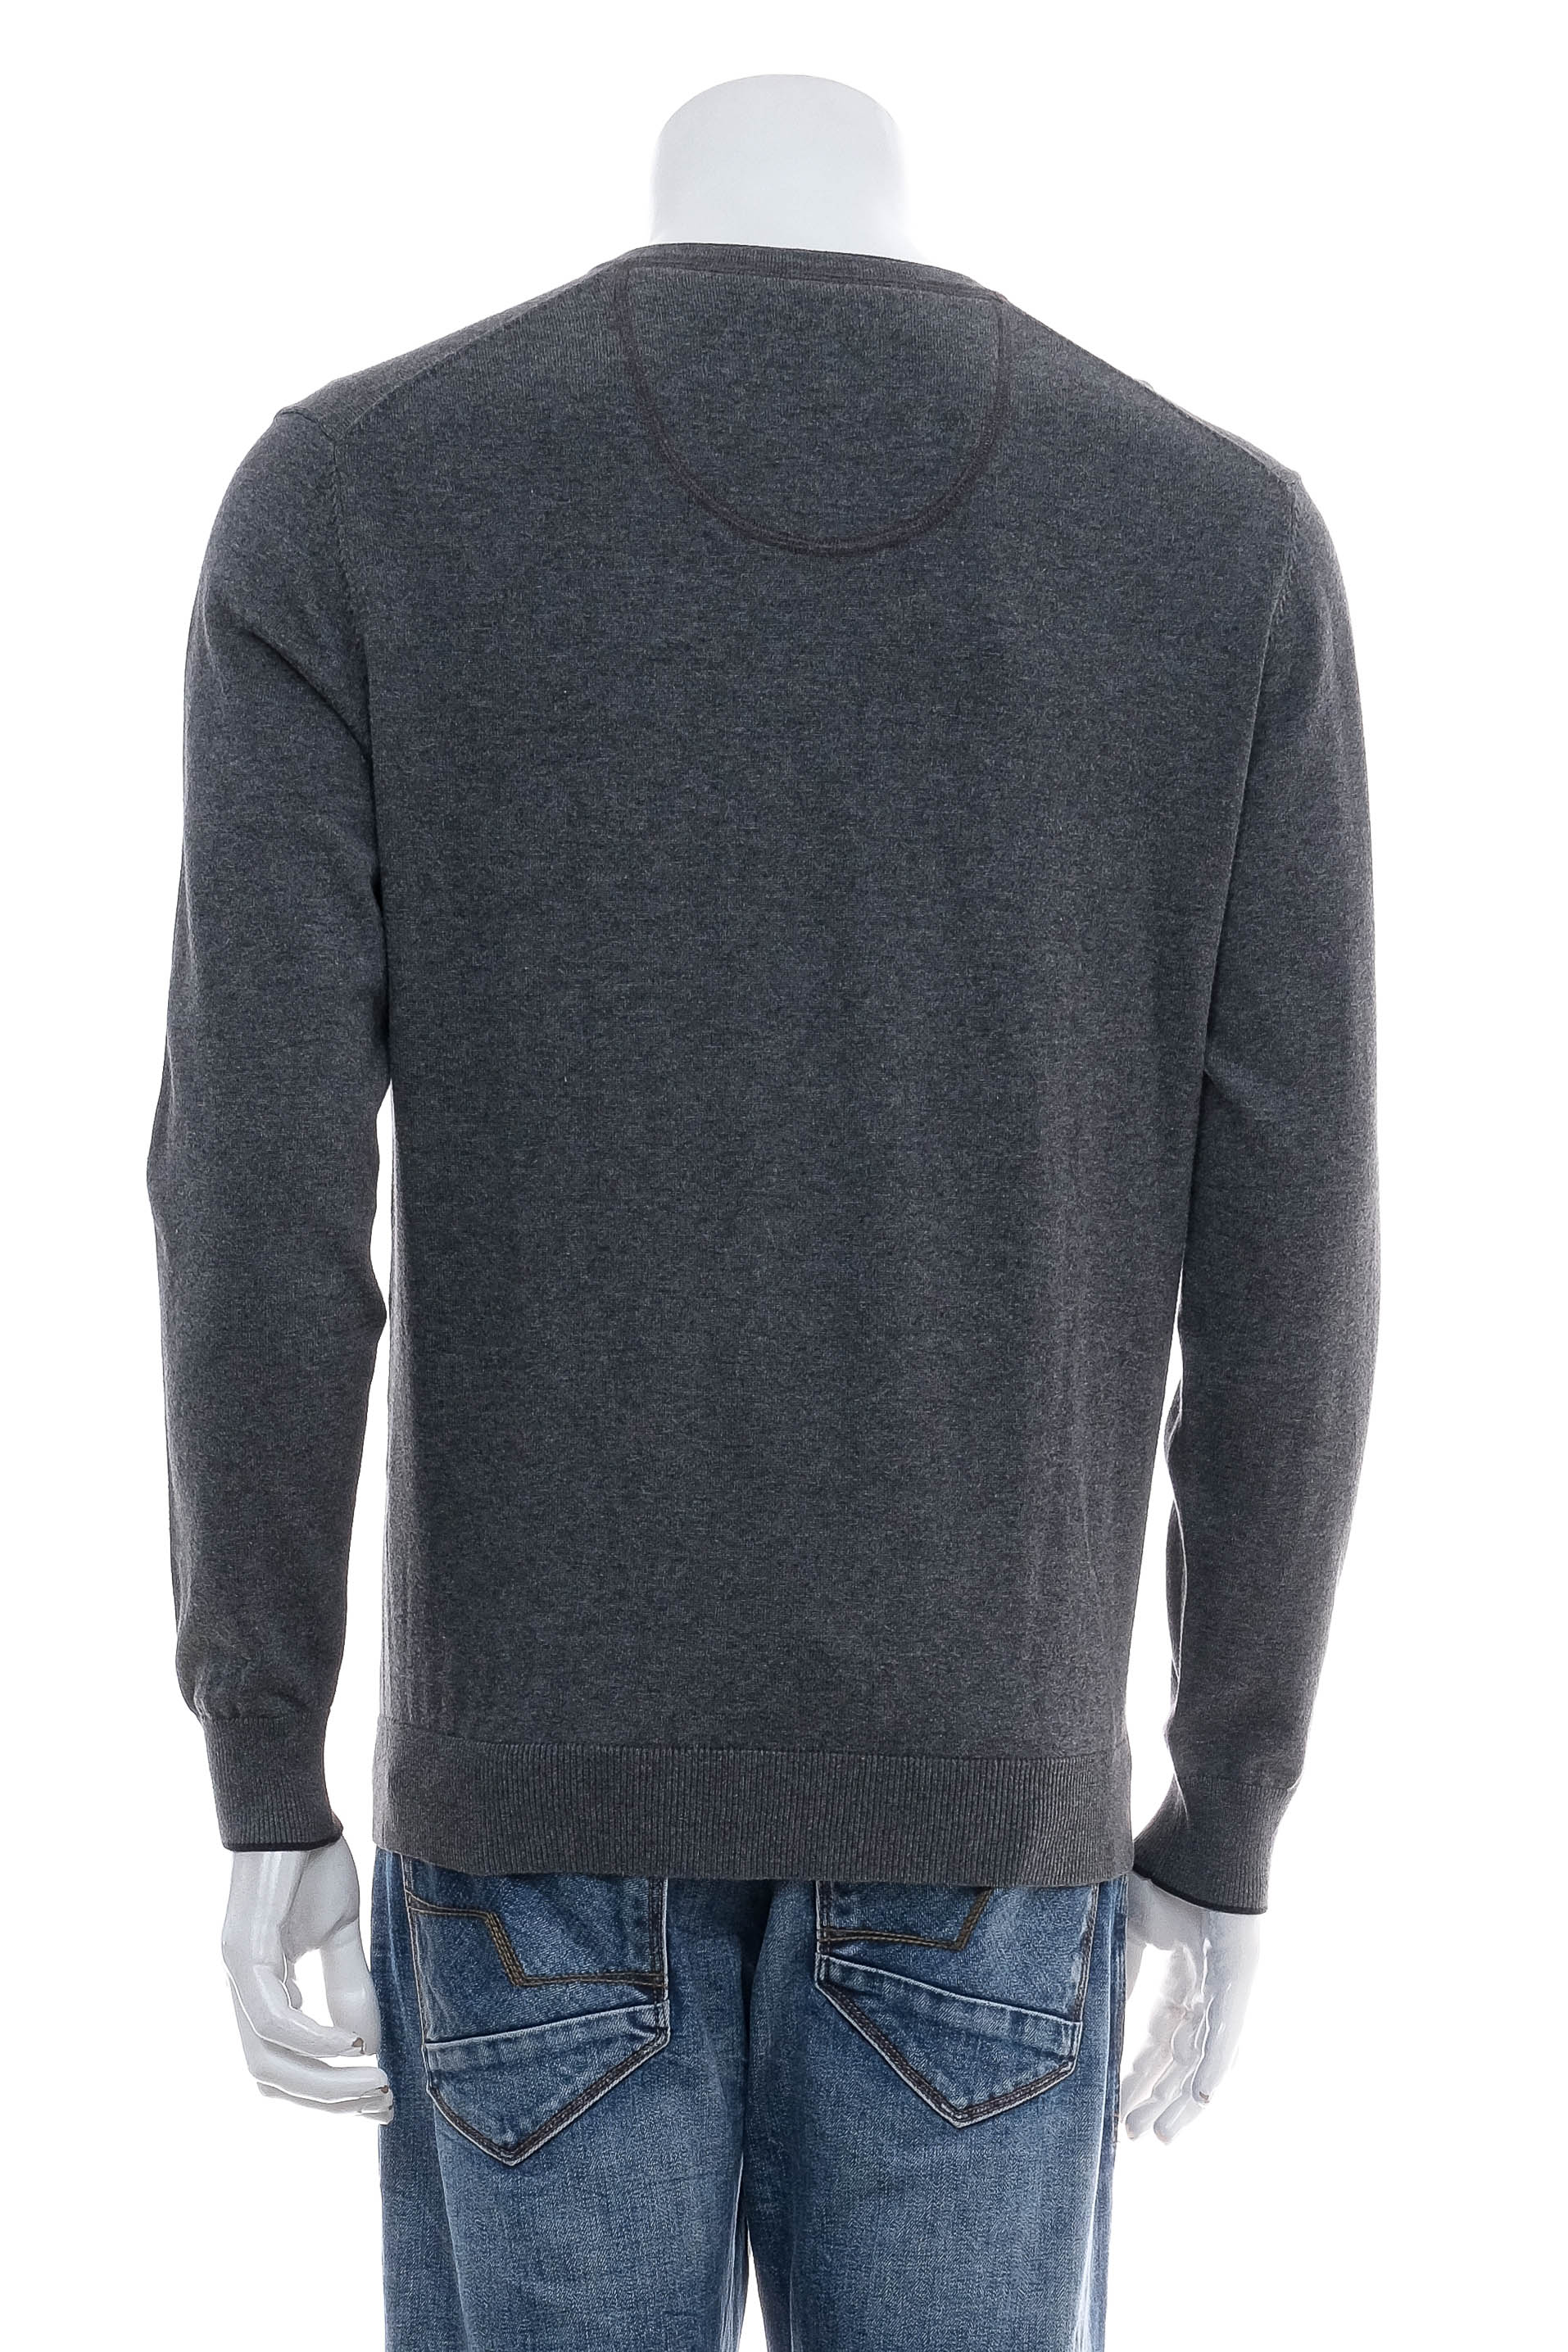 Men's sweater - Eterna - 1